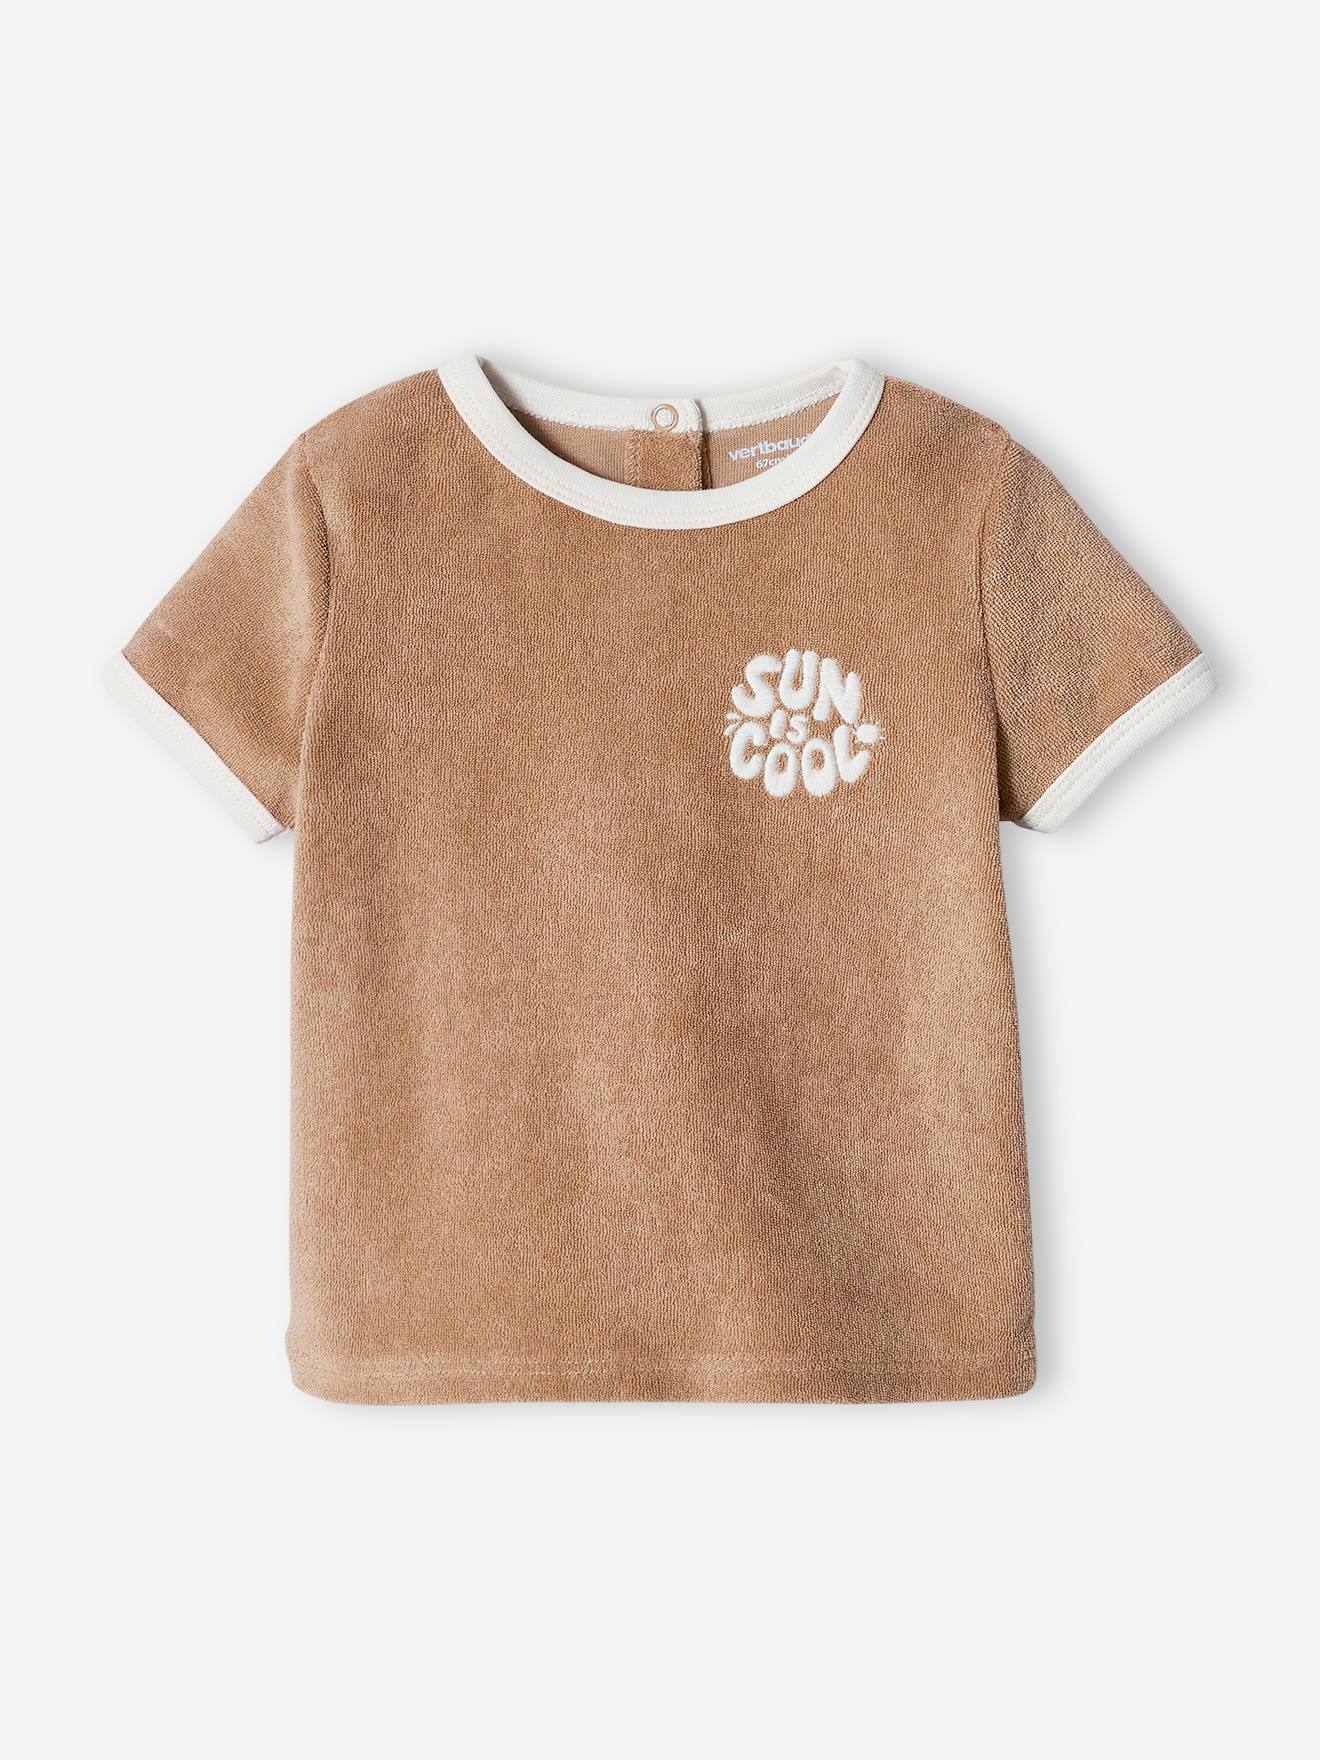 Ensemble de Vêtement - Tee Shirt et short - pour Enfant Garçon - 100fran  SHOP